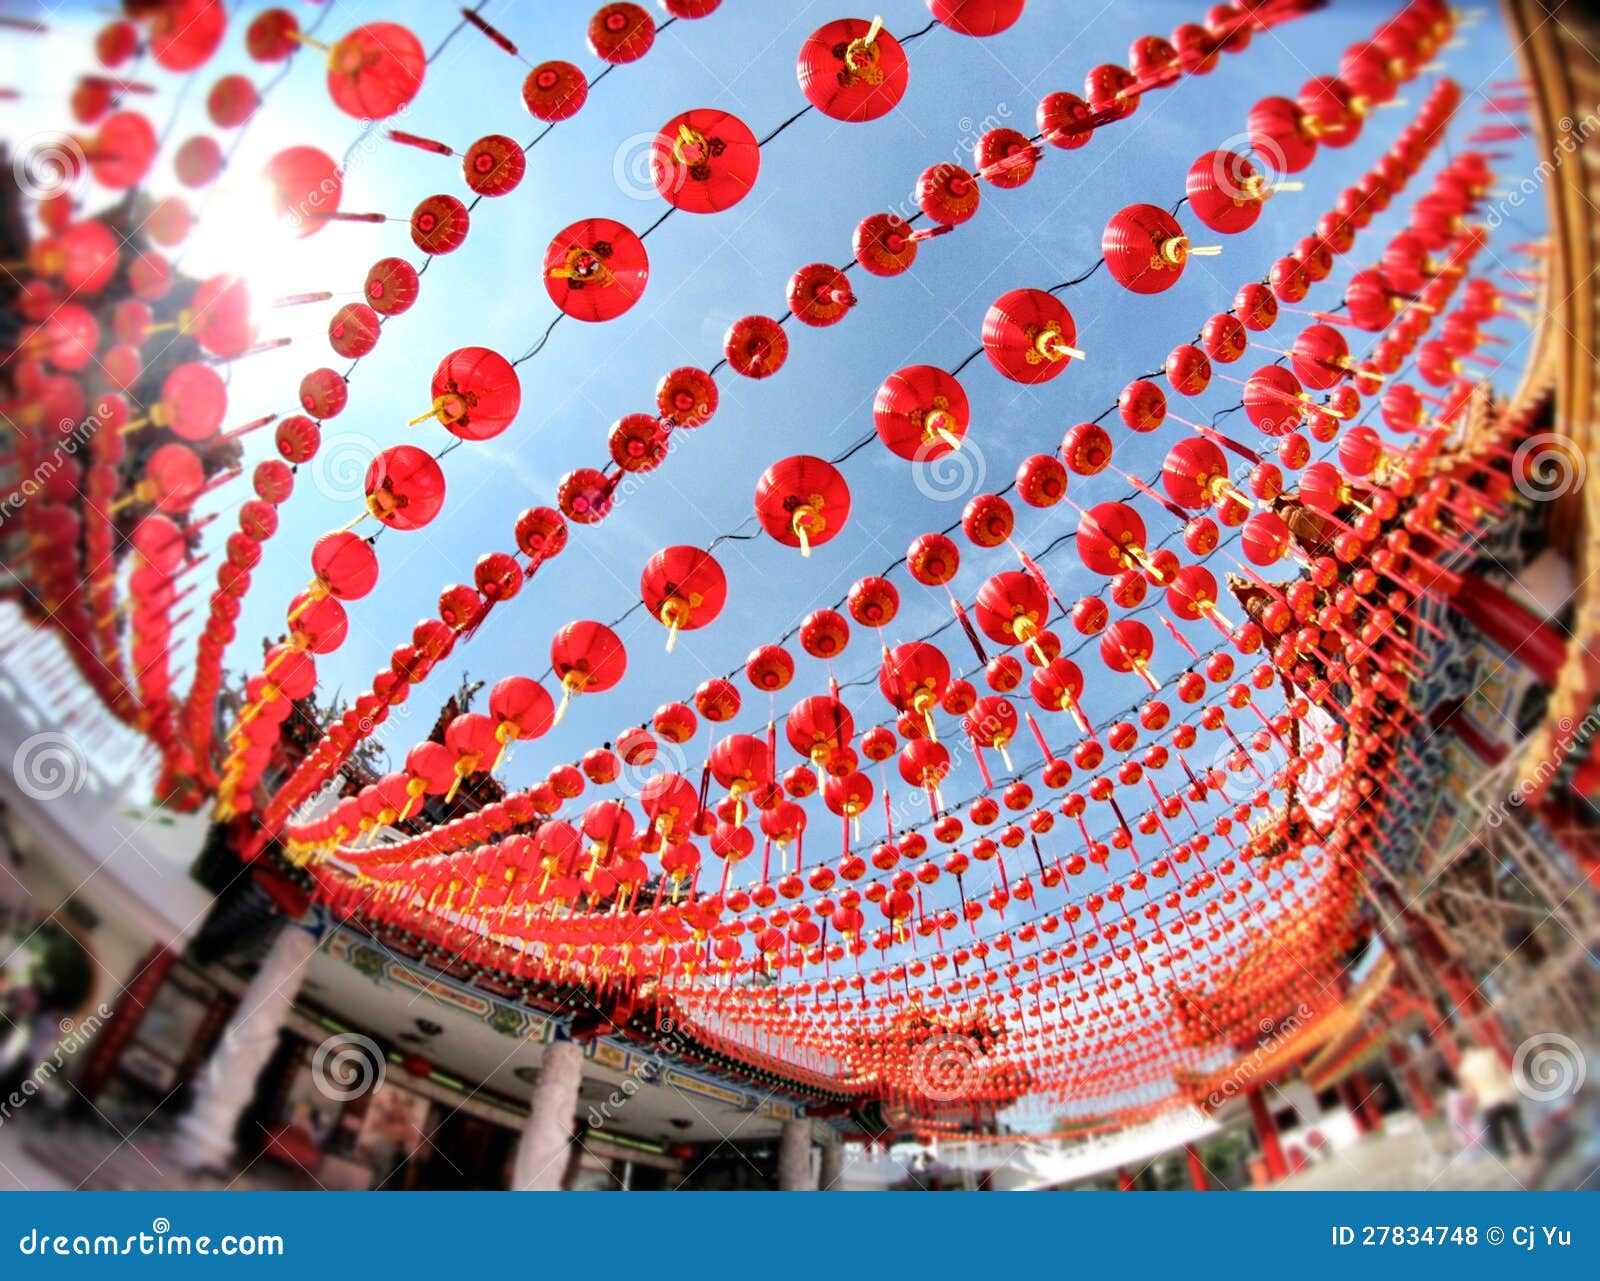 Chinese New Year Celebration Royalty Free Stock Photos - Image 